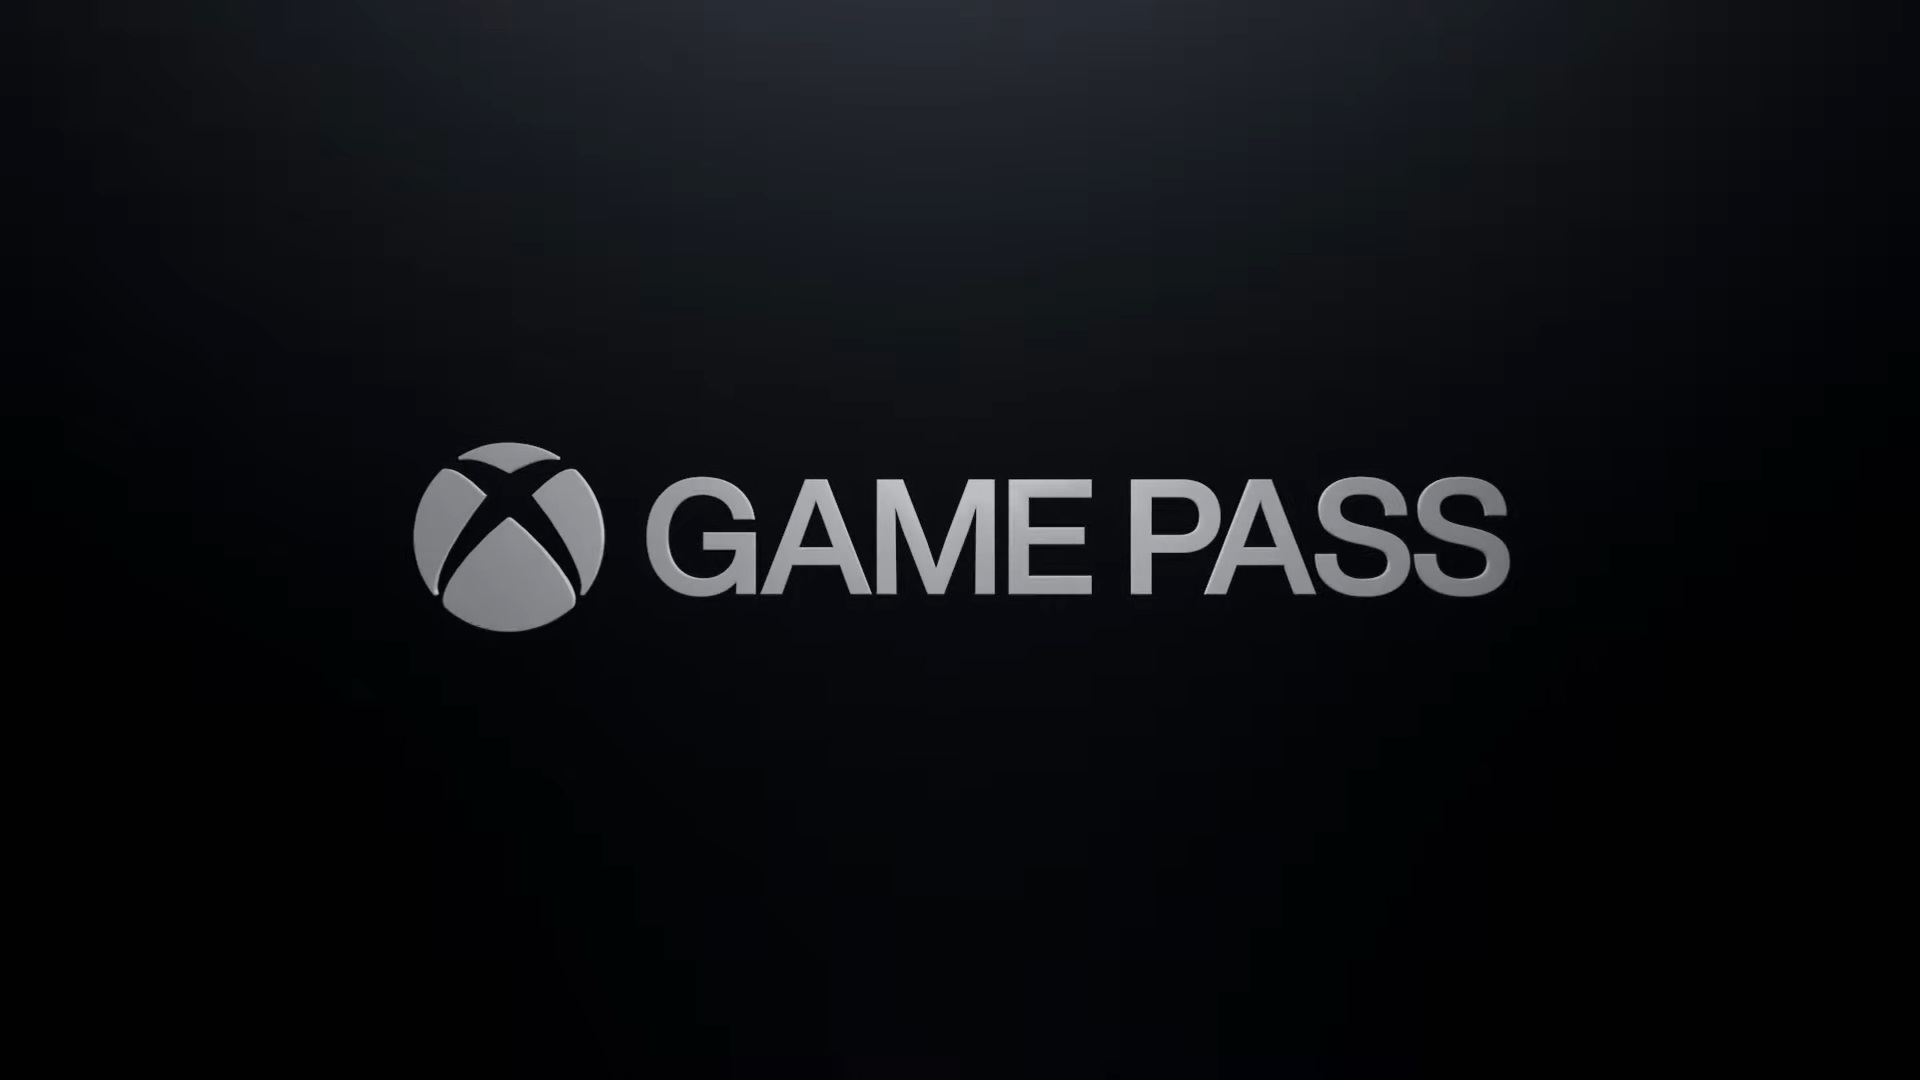 Xbox Game Pass เอาข้อเสนอการทดลองใช้งาน $1 ดอลลาร์ออกไปแล้ว